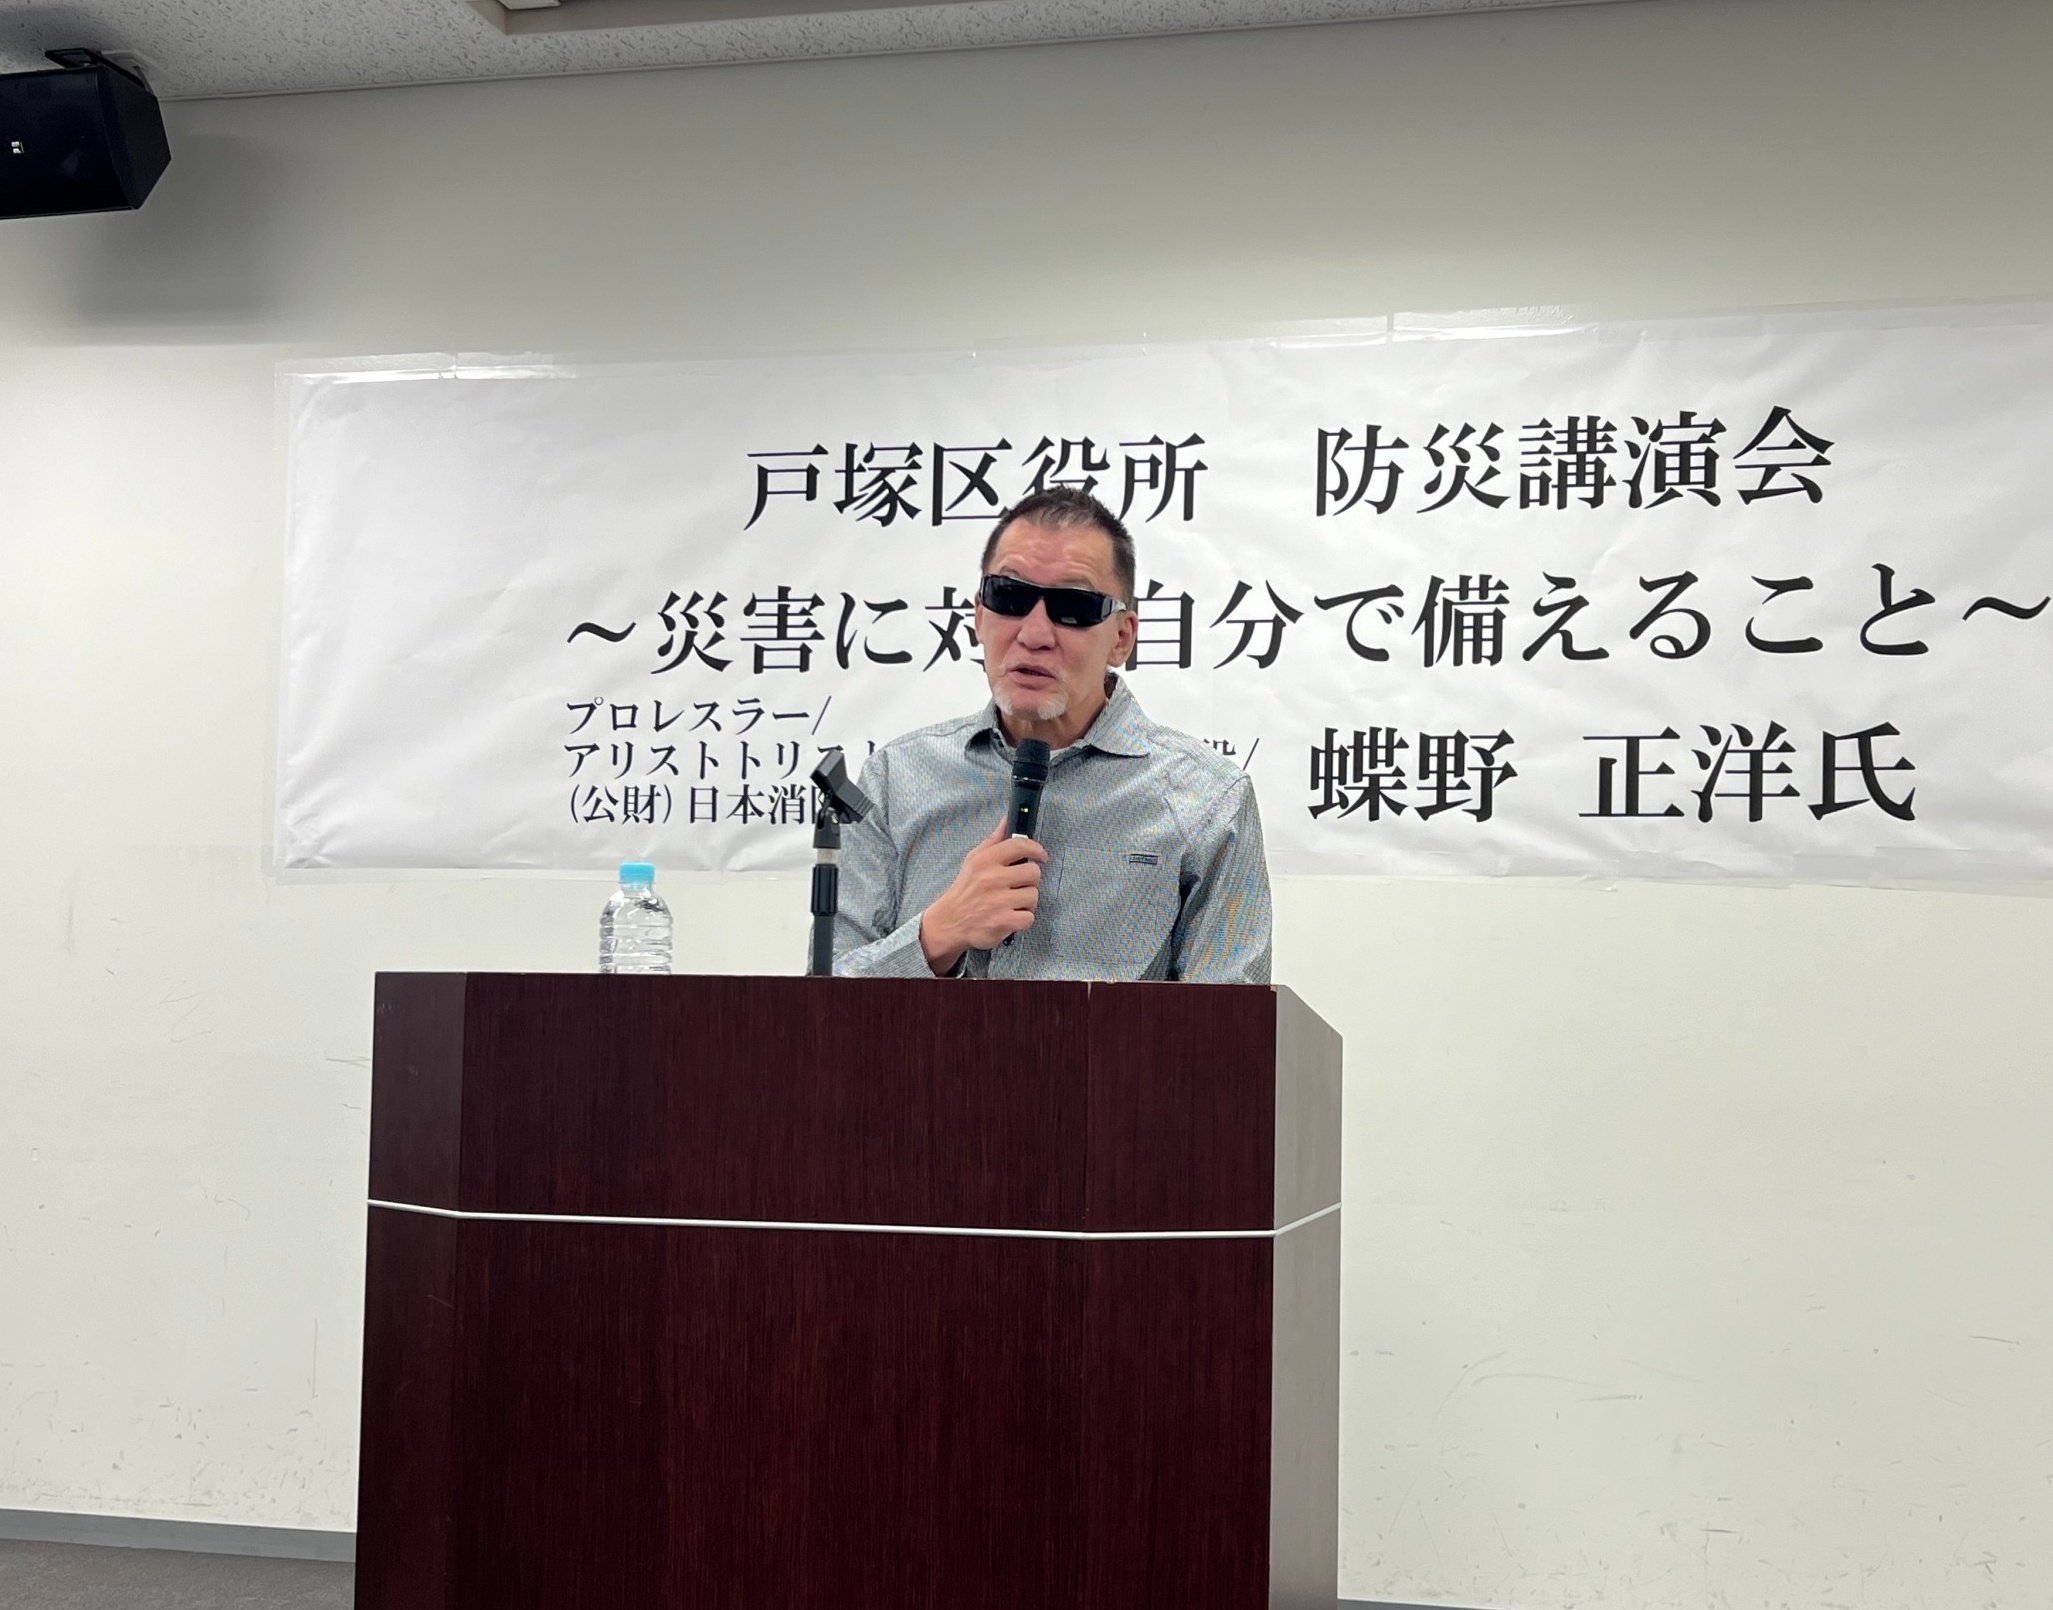 蝶野さんが戸塚区総合庁舎で『防災講演会~災害に対して自分で備えること~』を行いました